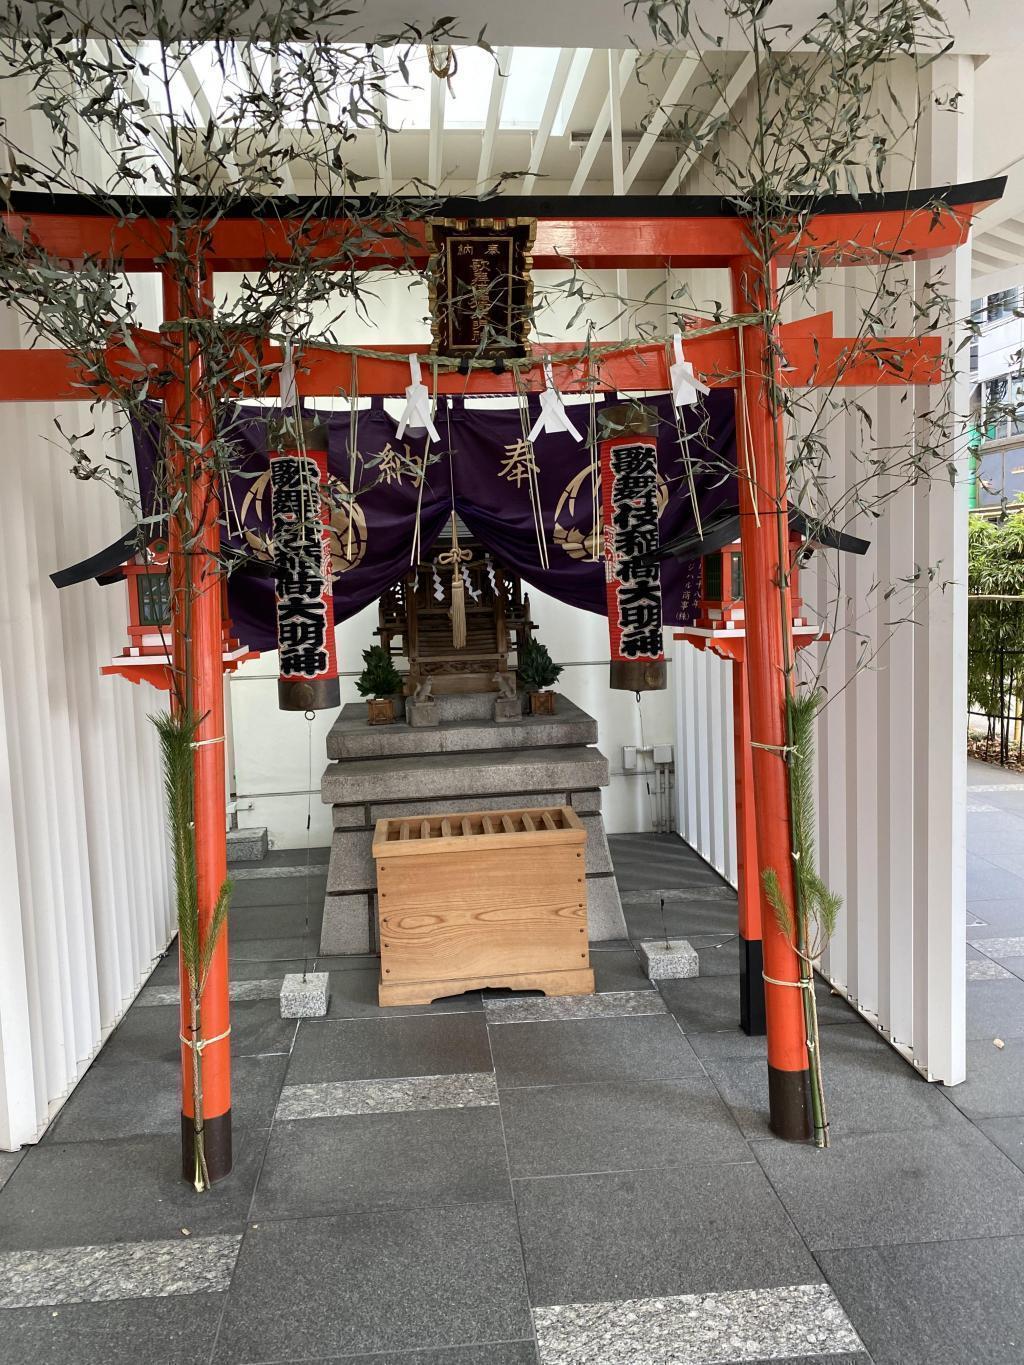 歌舞伎稲荷神社　 銀座の神社巡り

幸稲荷神社
